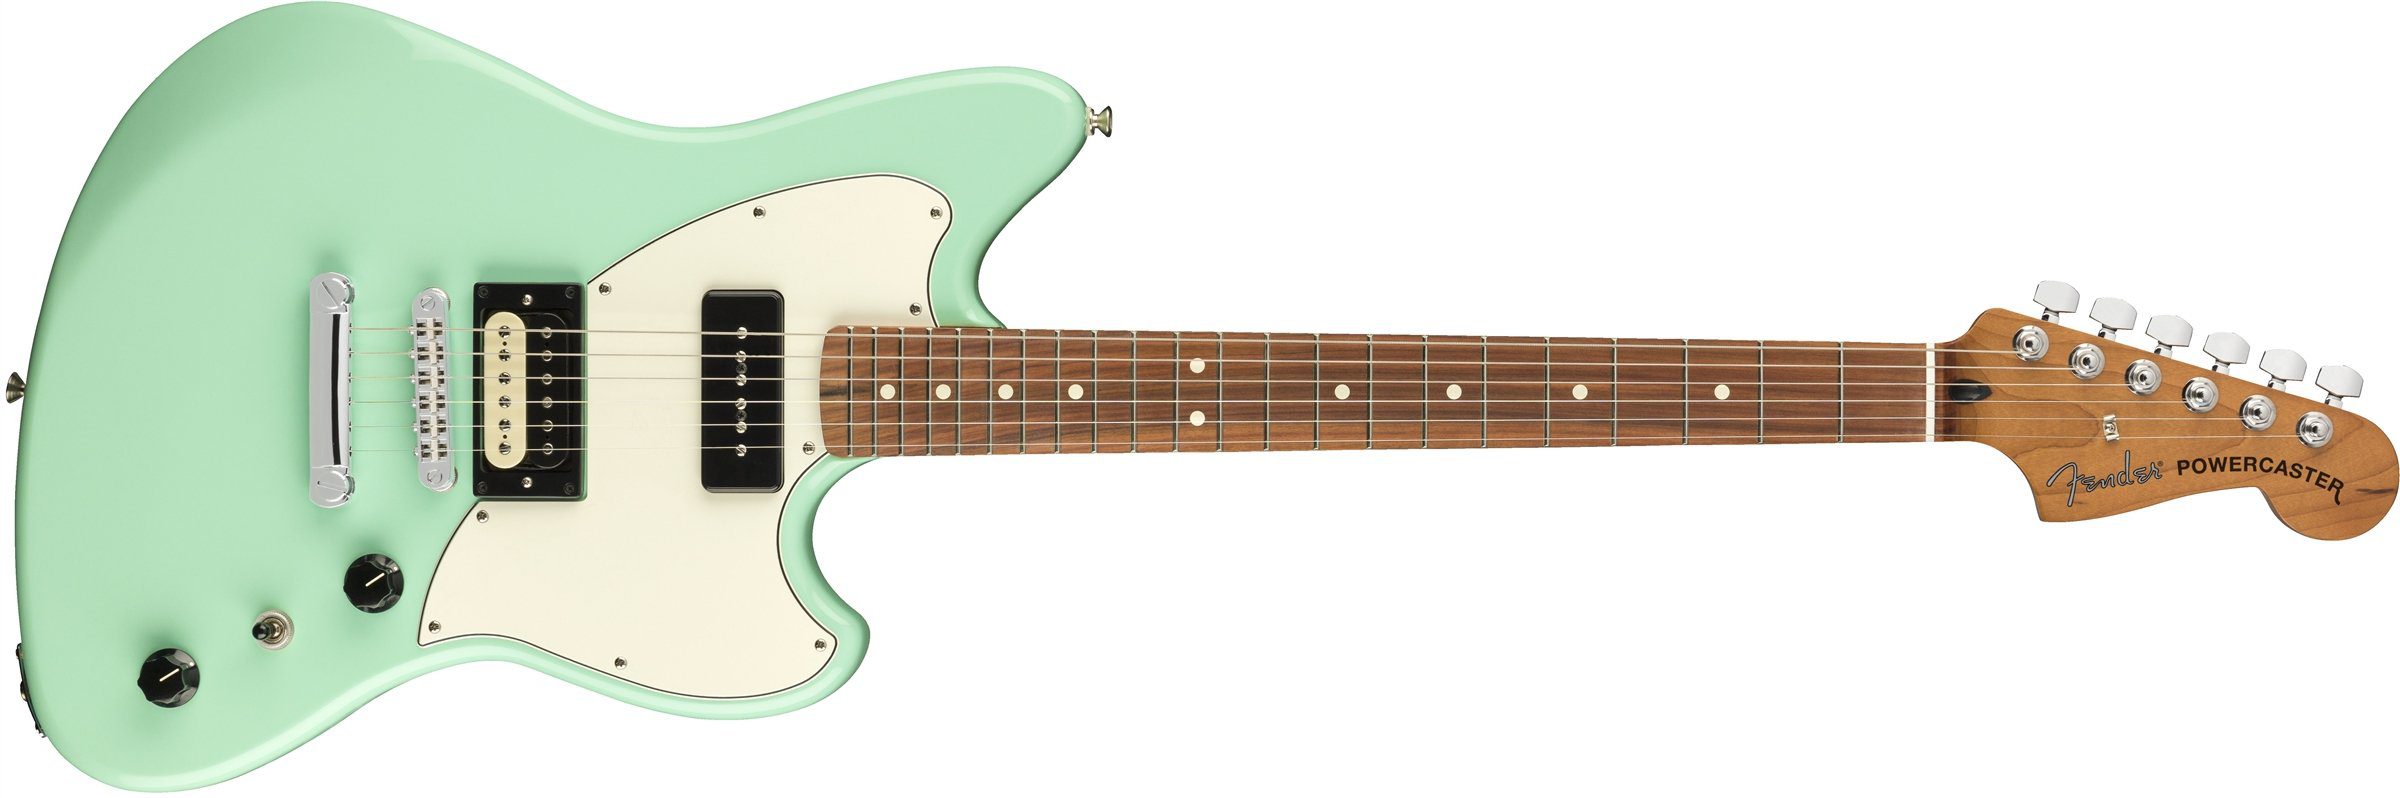 Fender-Alternate-Reality-Powercaster Surf Green